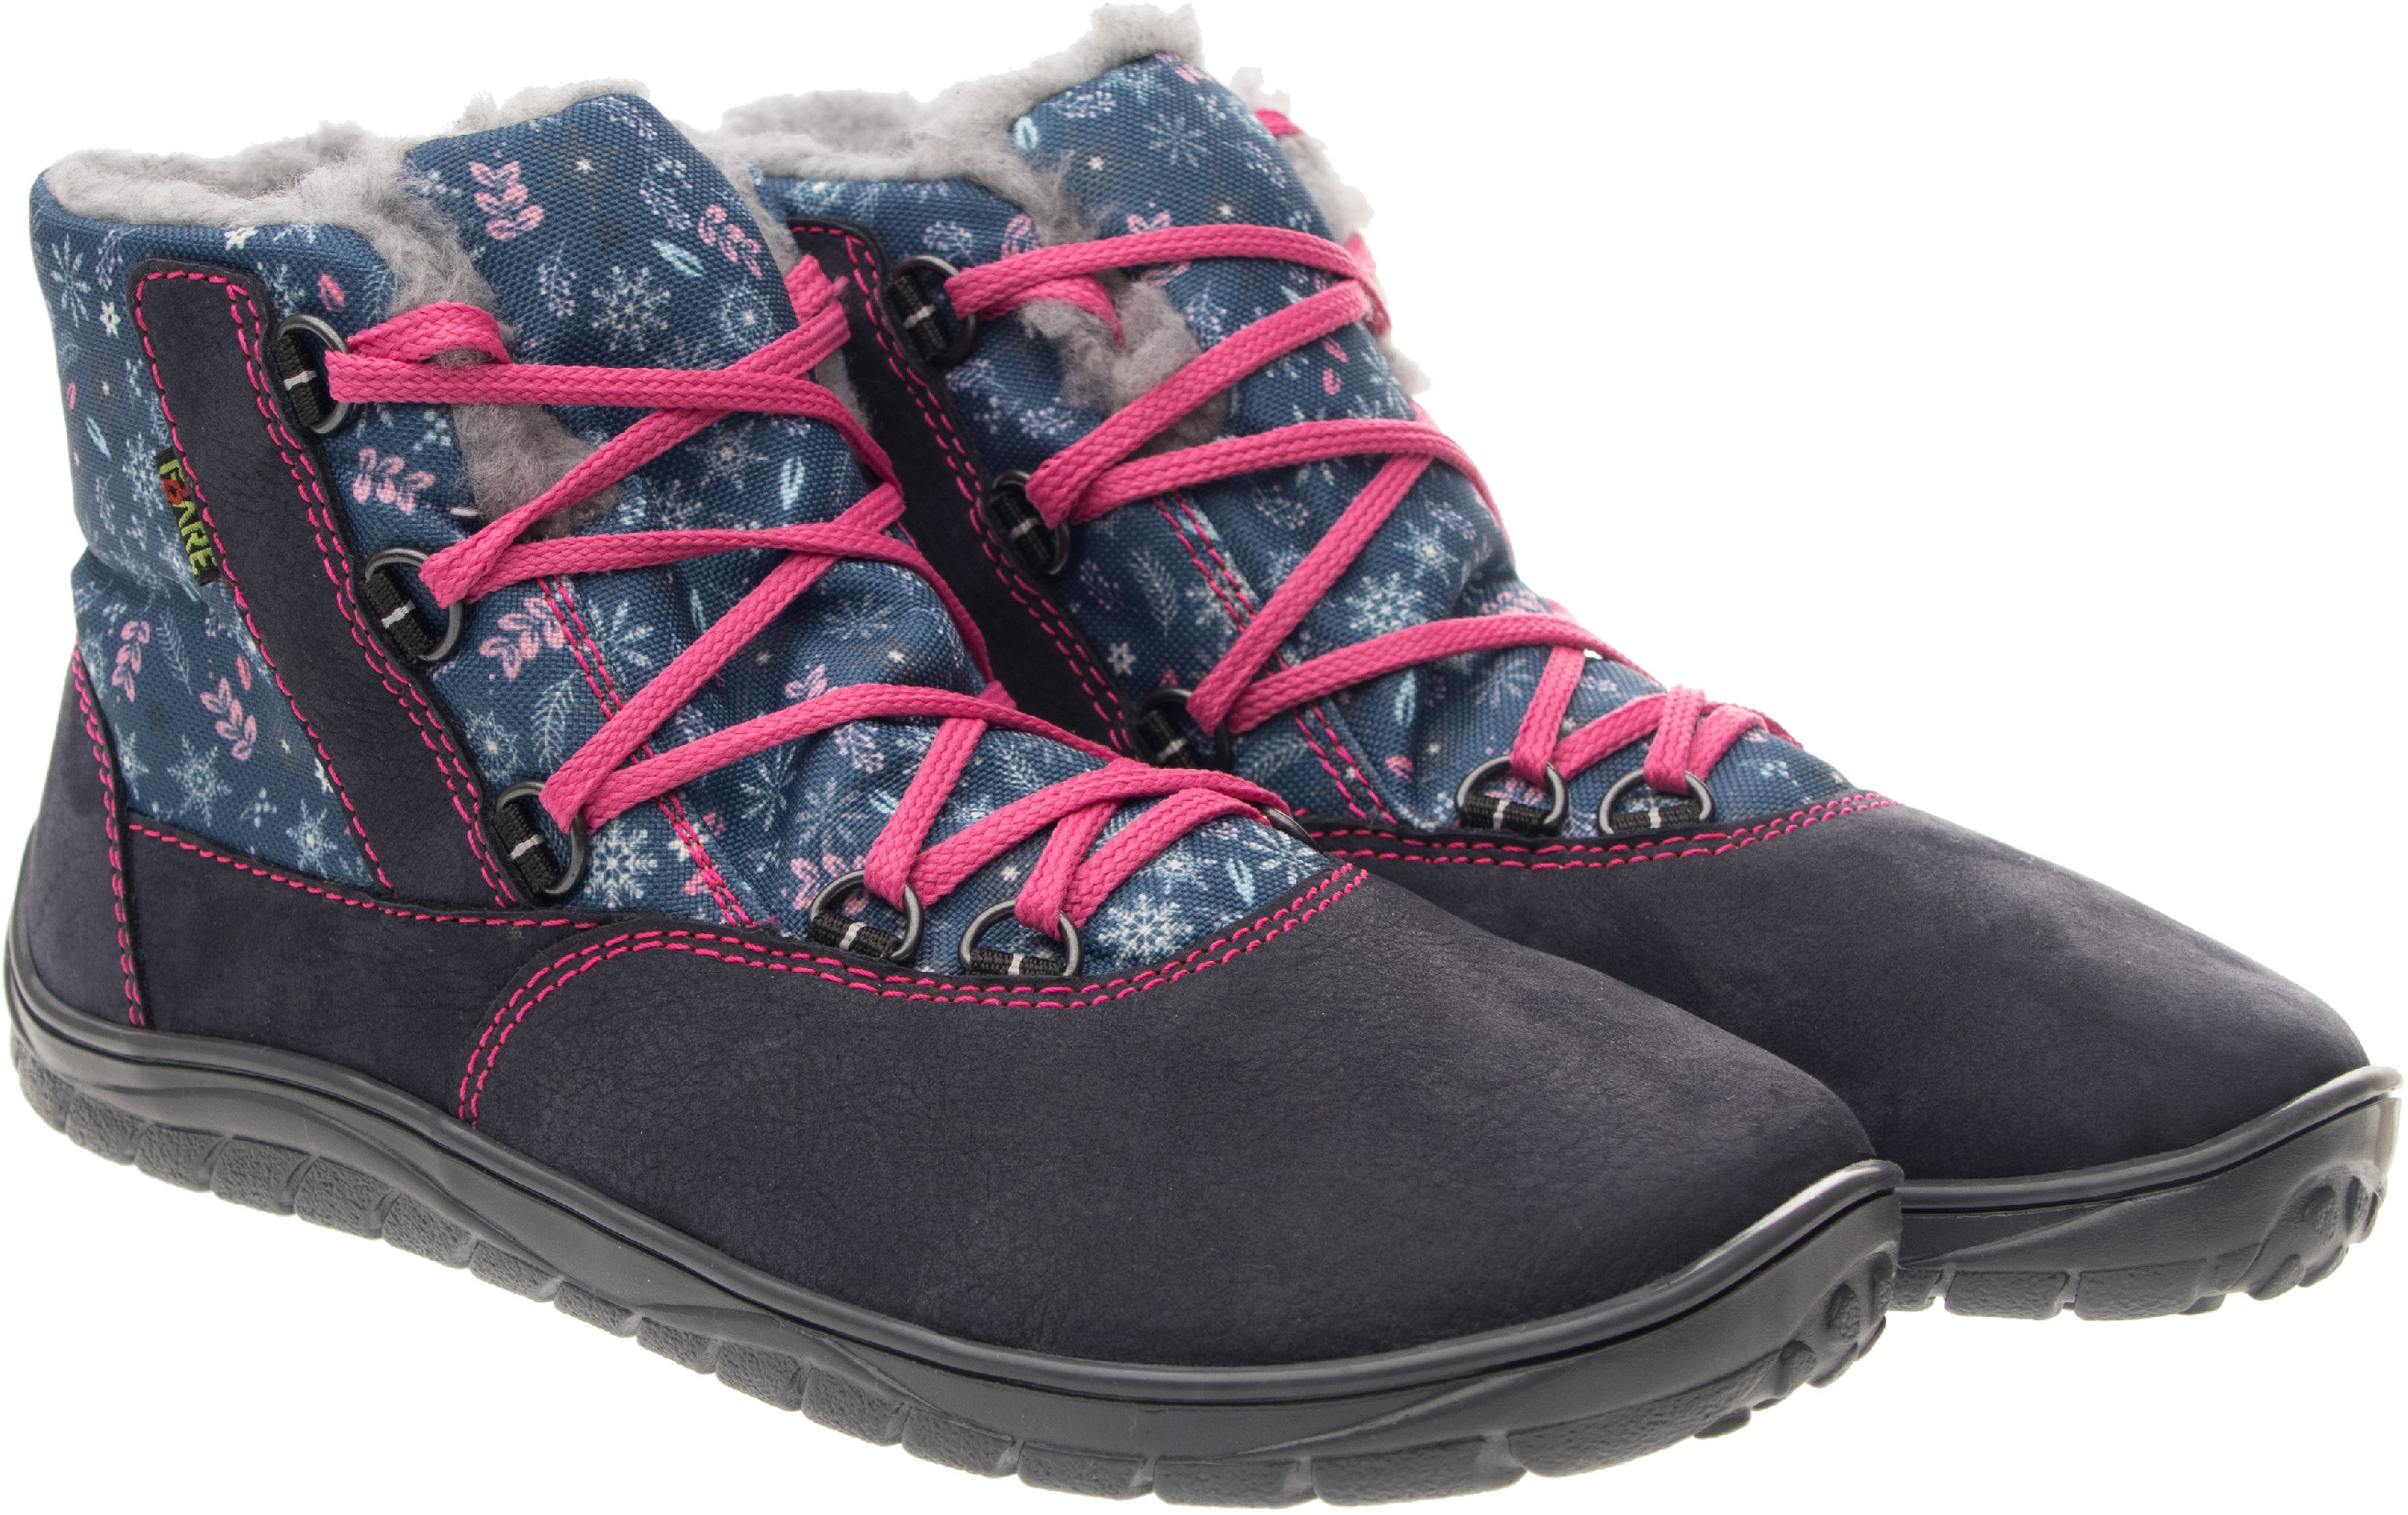 Fare Bare unisex zimní nepromokavé boty B5643201 Velikost obuvi: 35